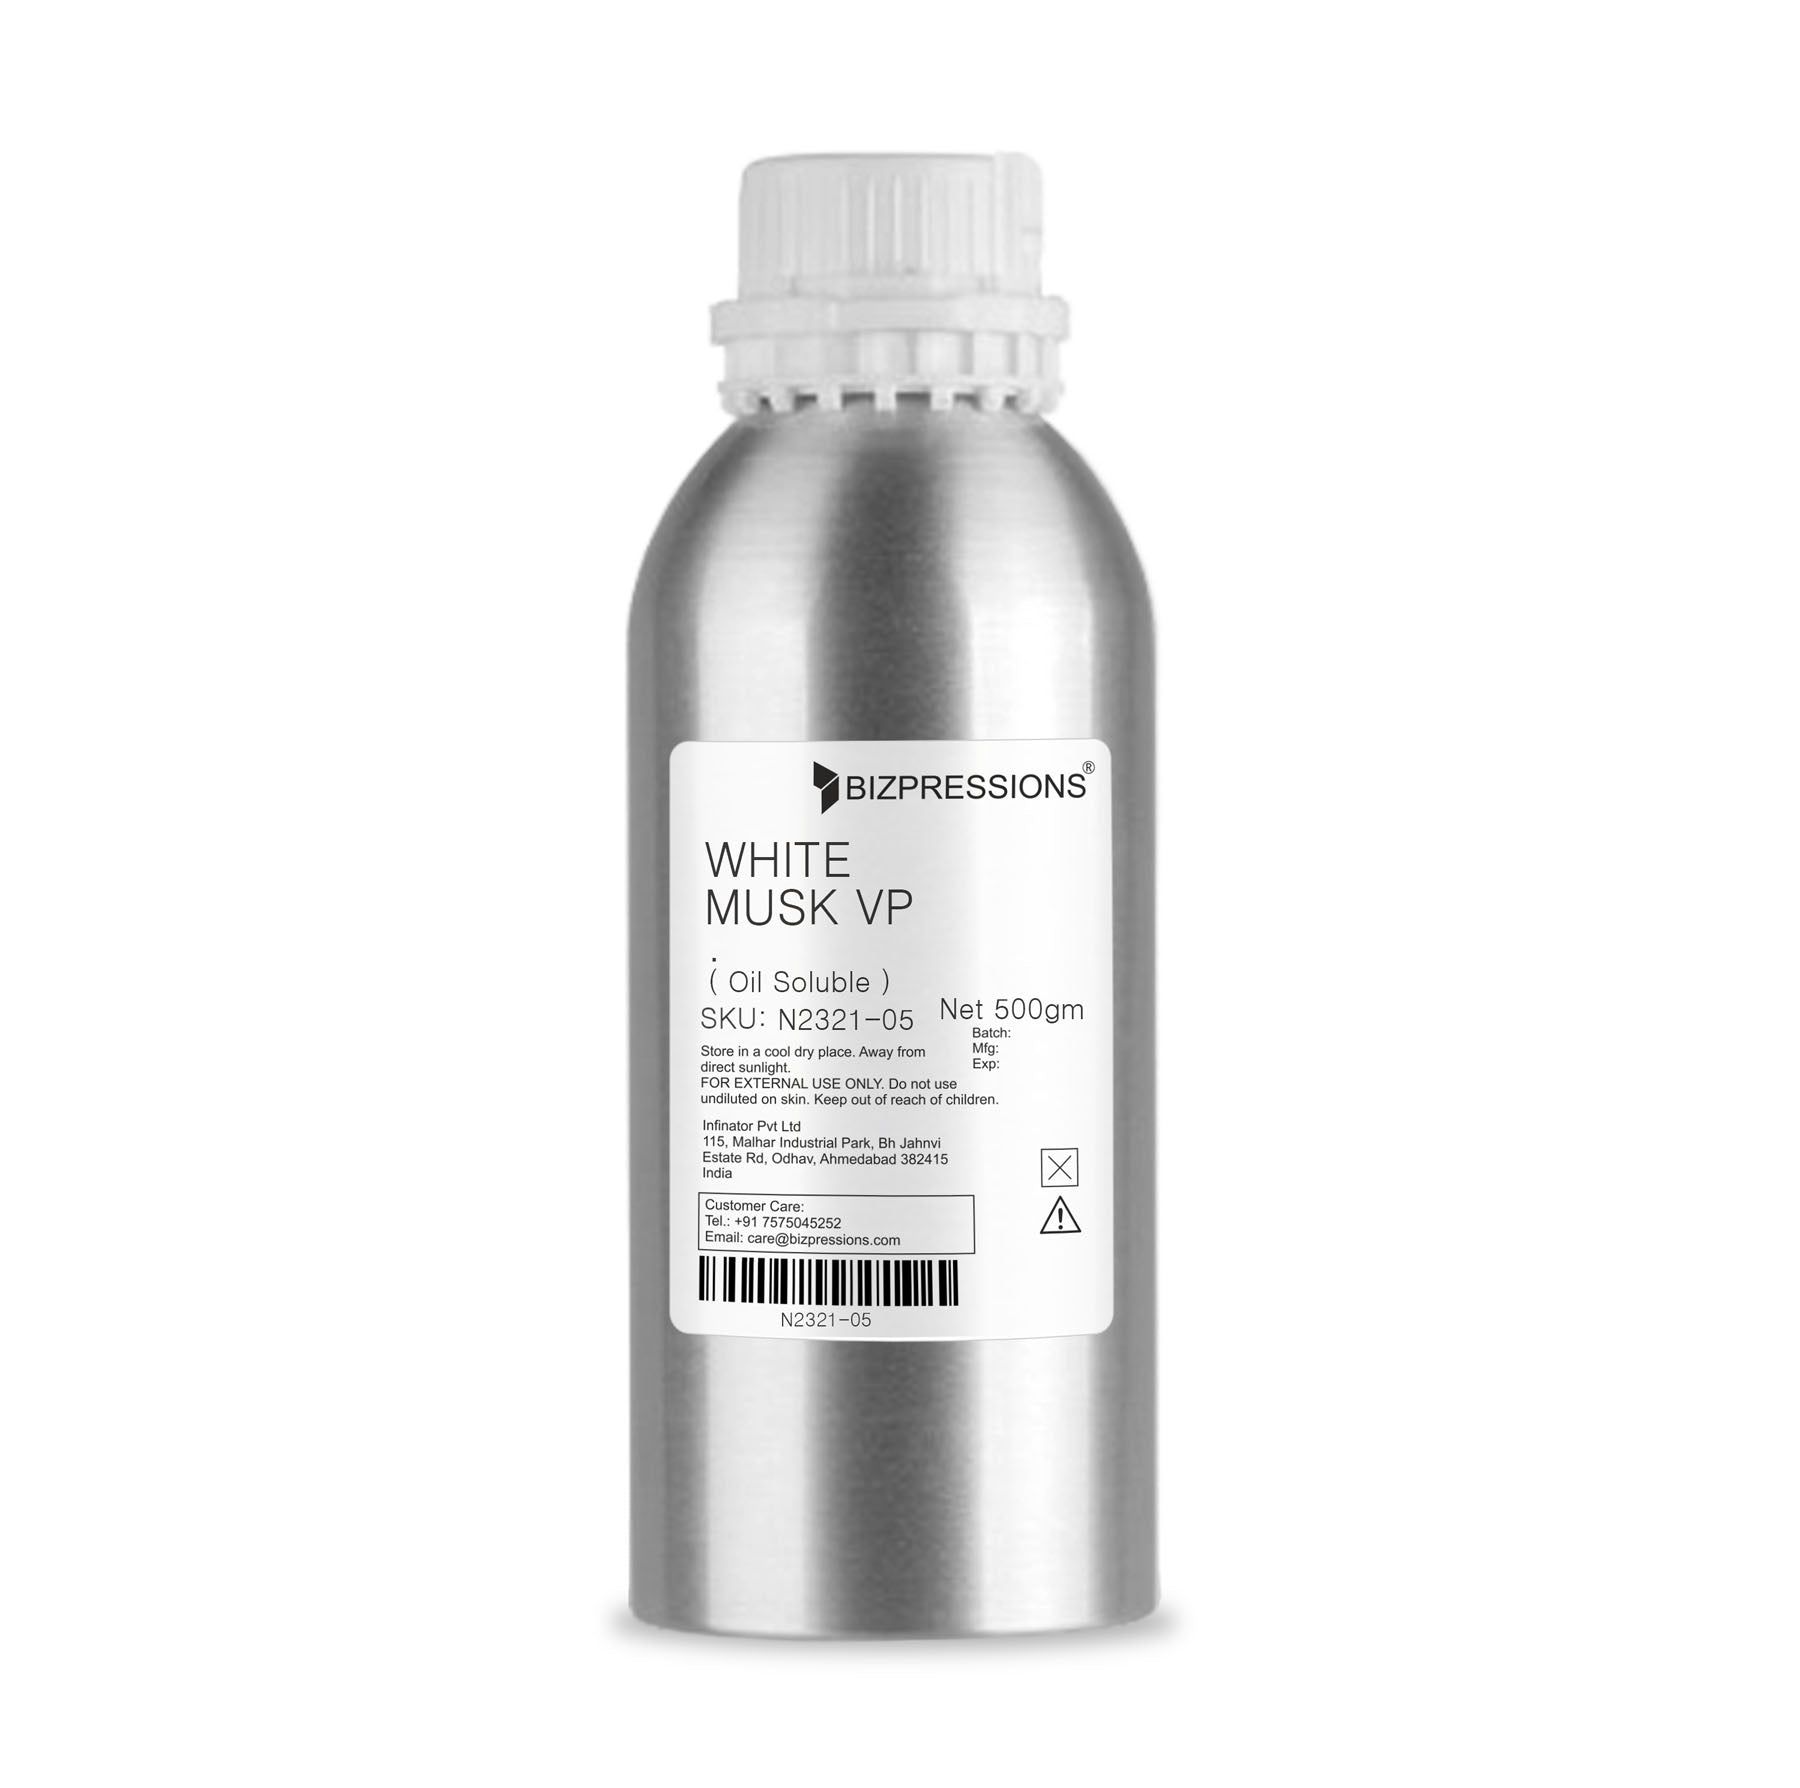 WHITE MUSK VP - Fragrance ( Oil Soluble ) - 500 gm